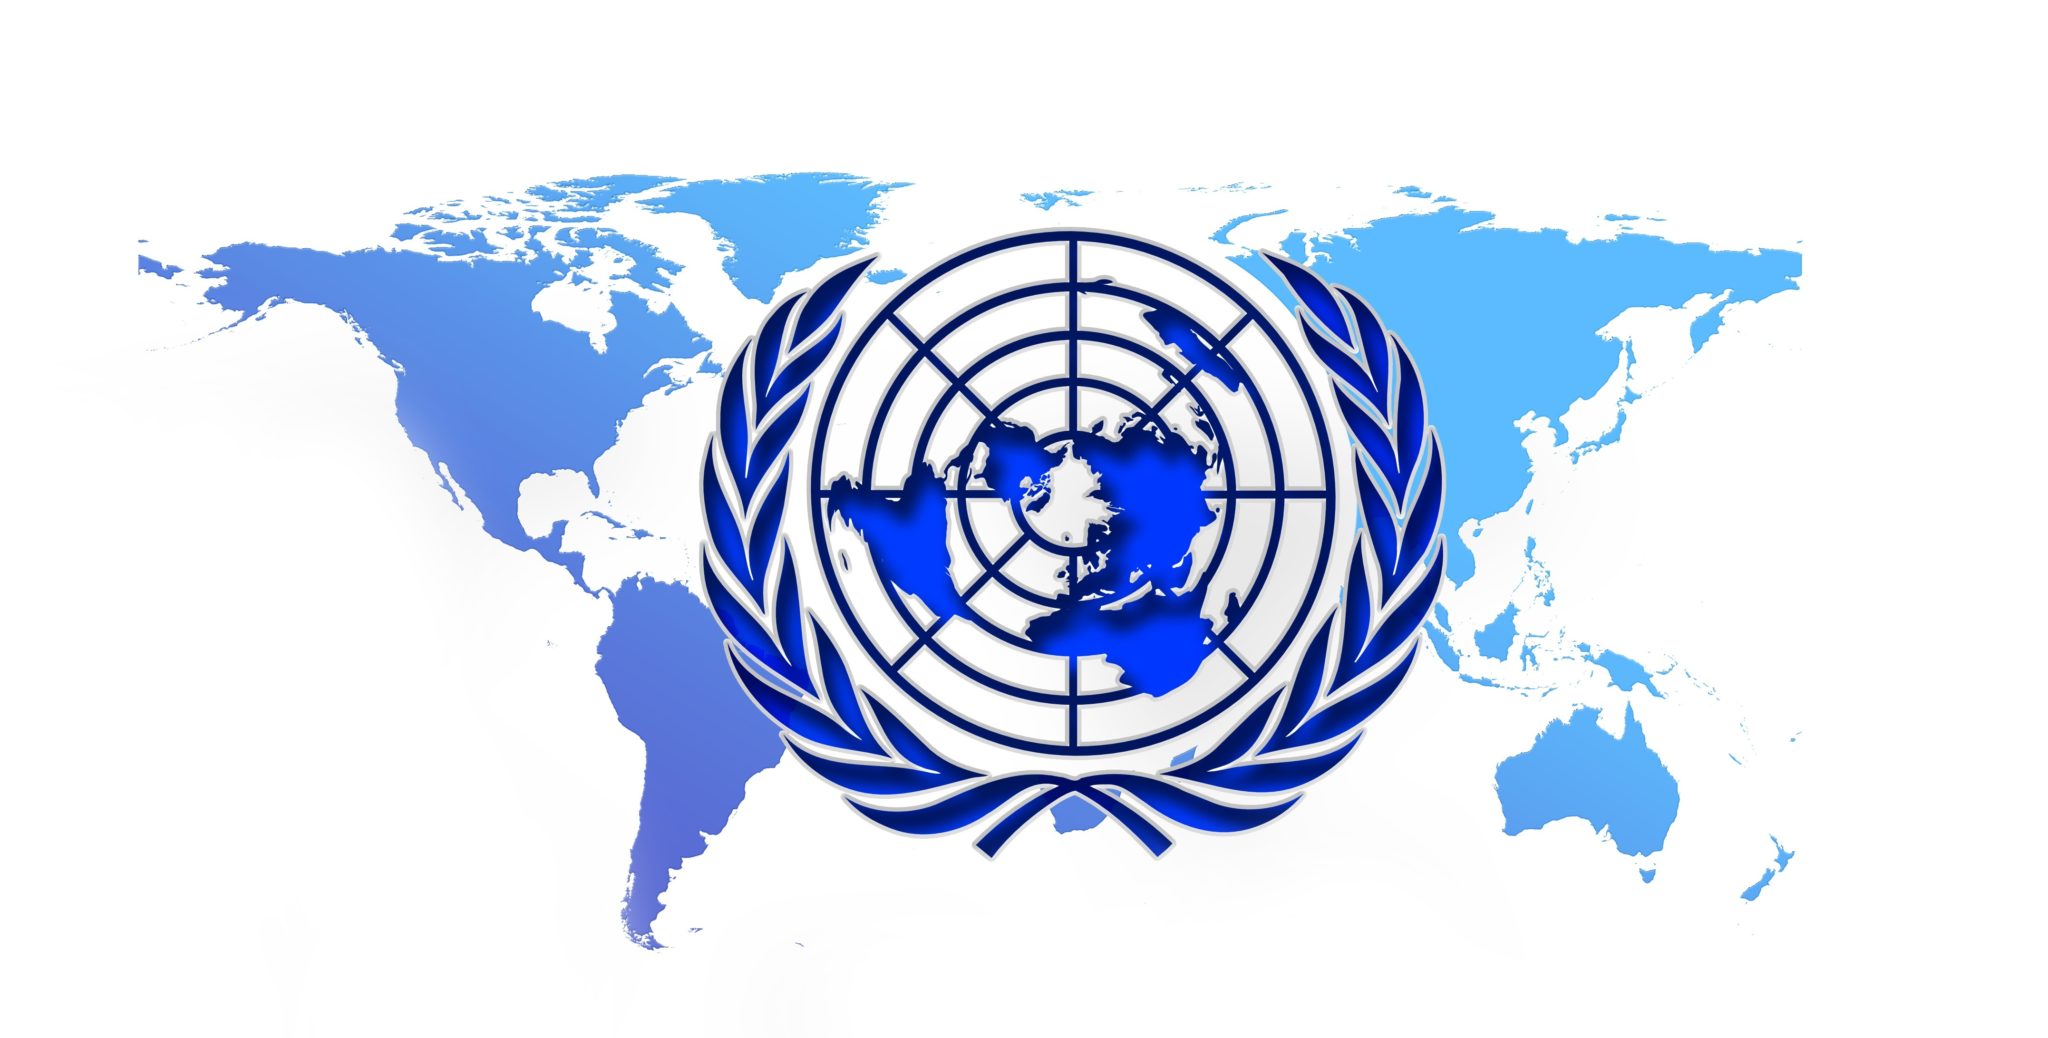 Оон регистрация. Совет безопасности ООН эмблема. Совет безопасности ООН флаг. Генеральная Ассамблея ООН эмблема. Международные организации ООН.